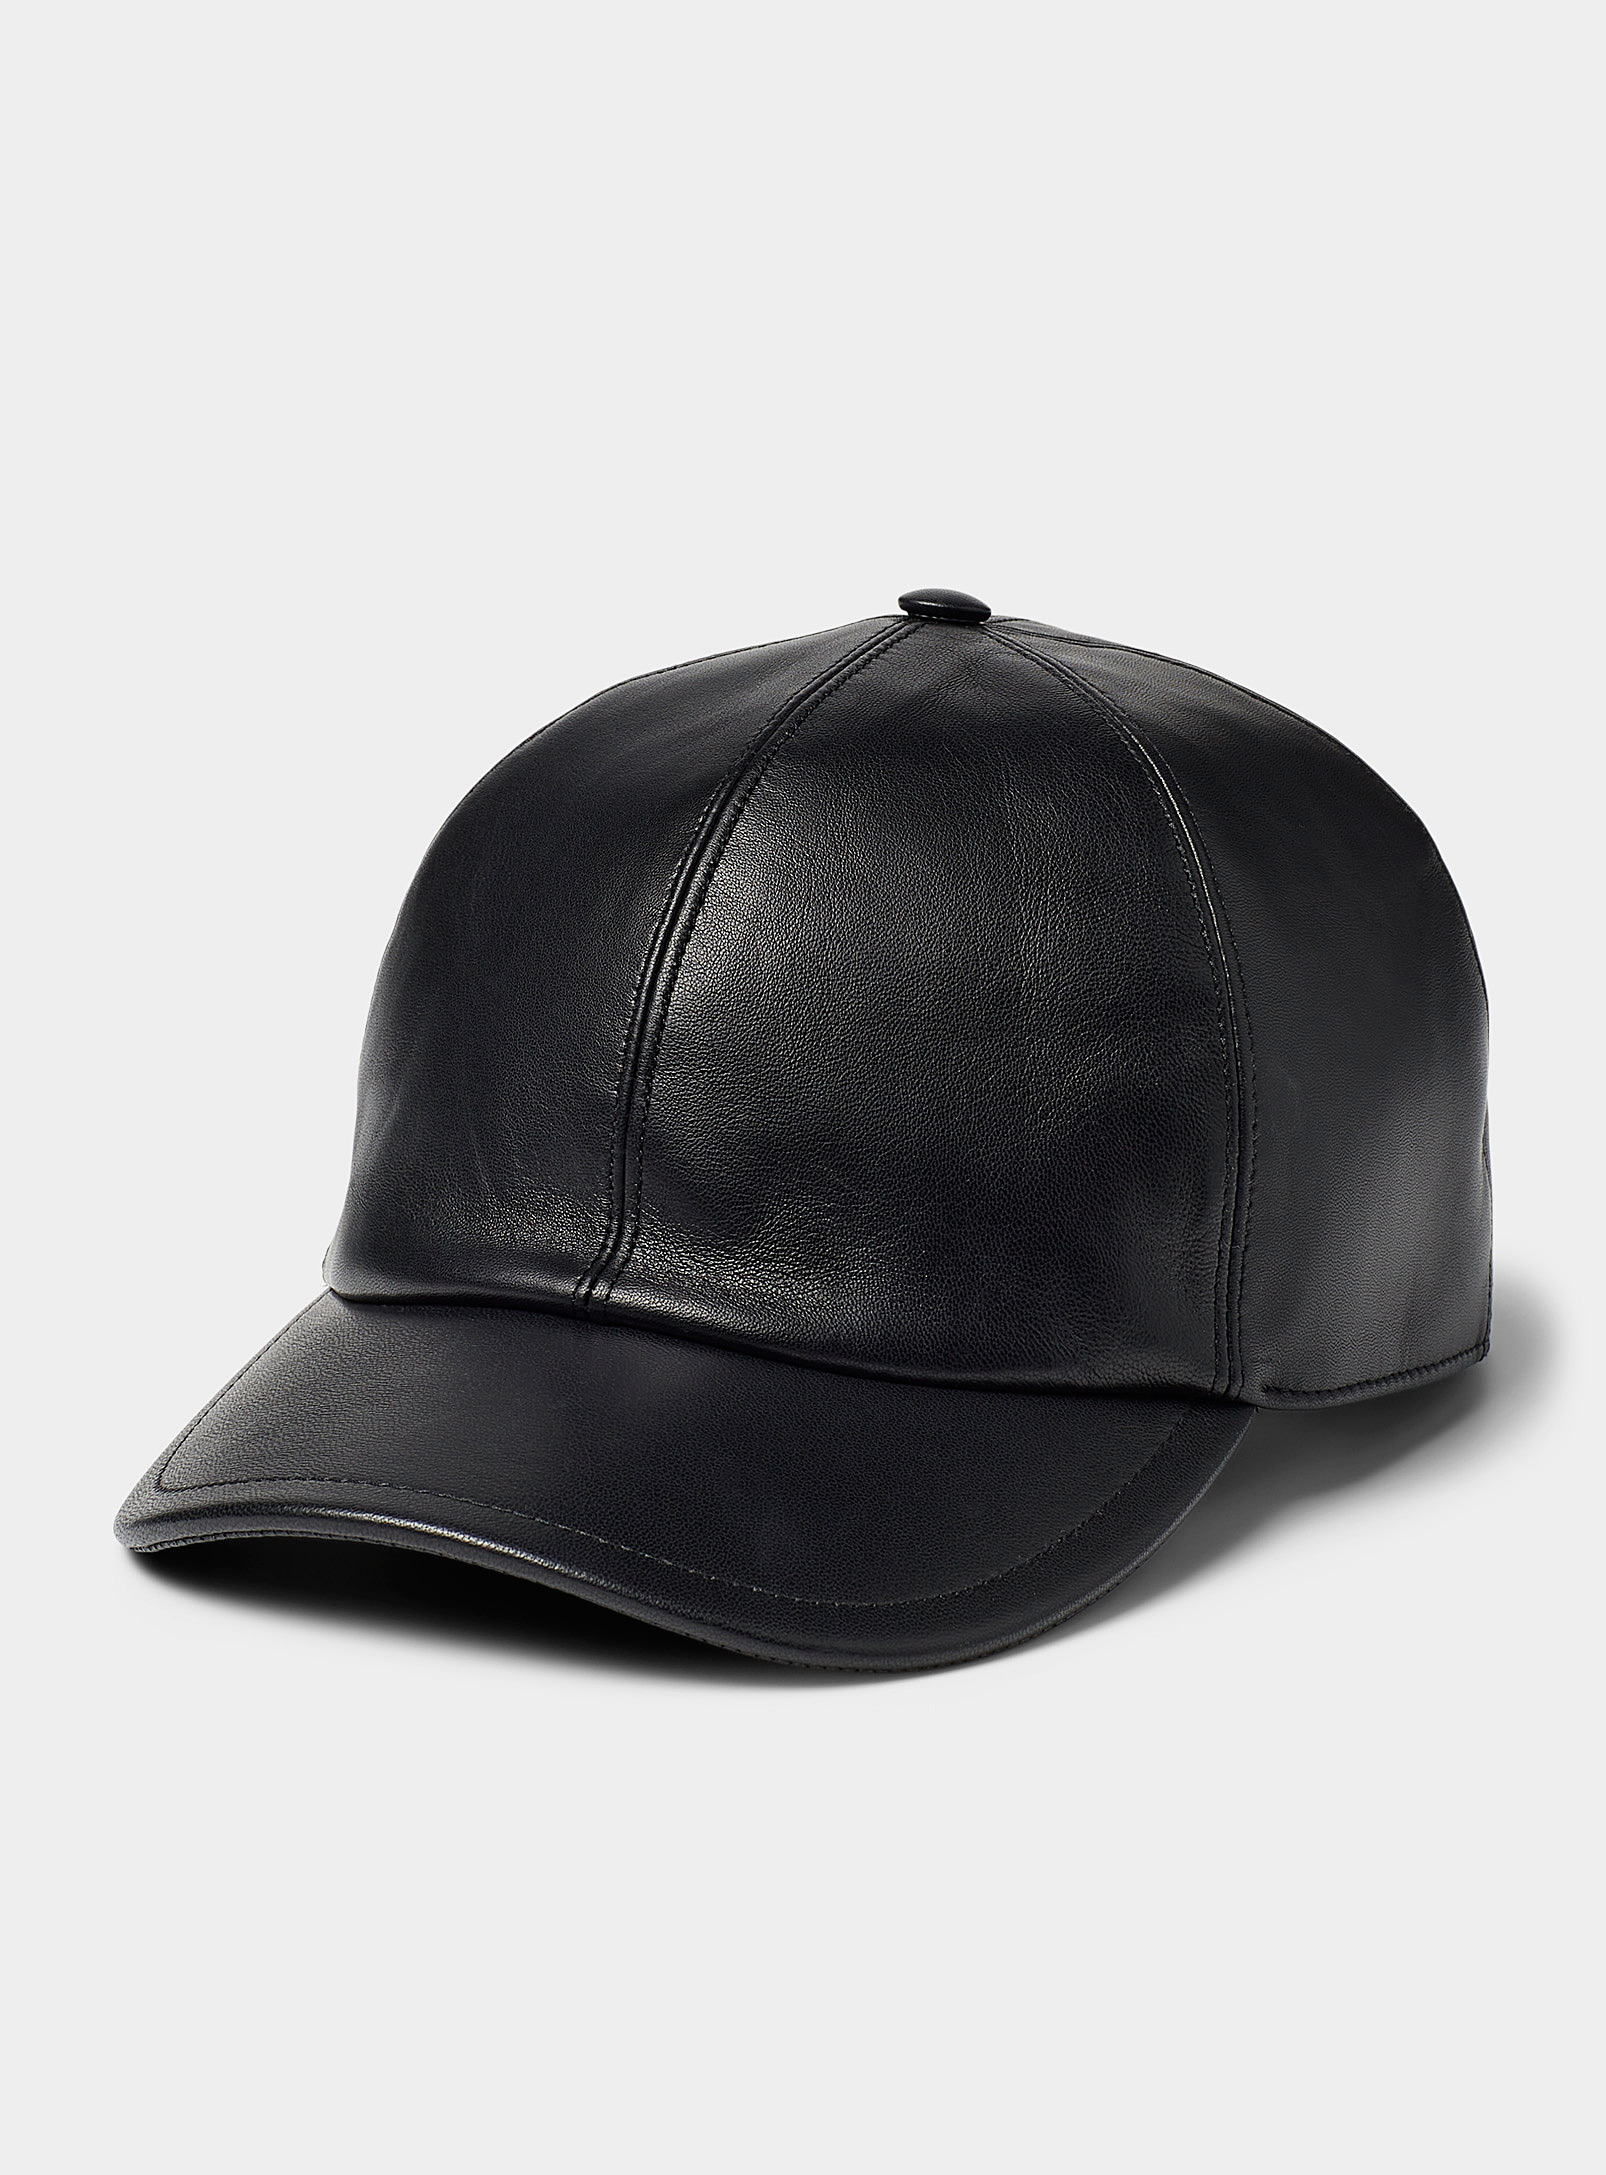 Le 31 - Men's Leather cap